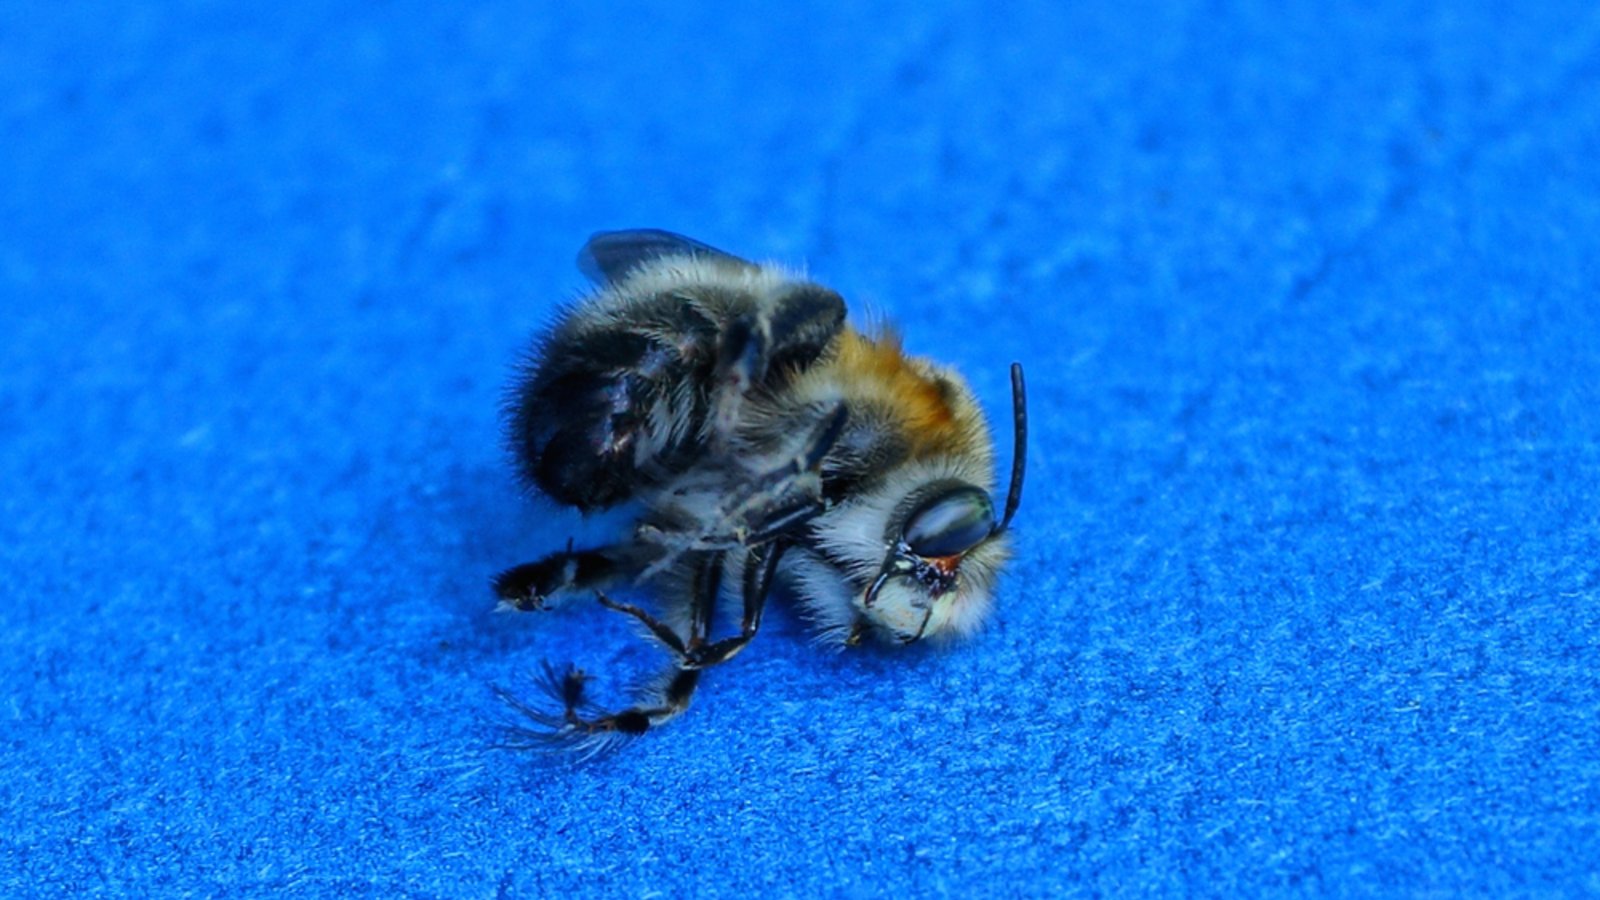 Droht jetzt eine Strafe für die tote Biene?Foto: Butus / shutterstock.com